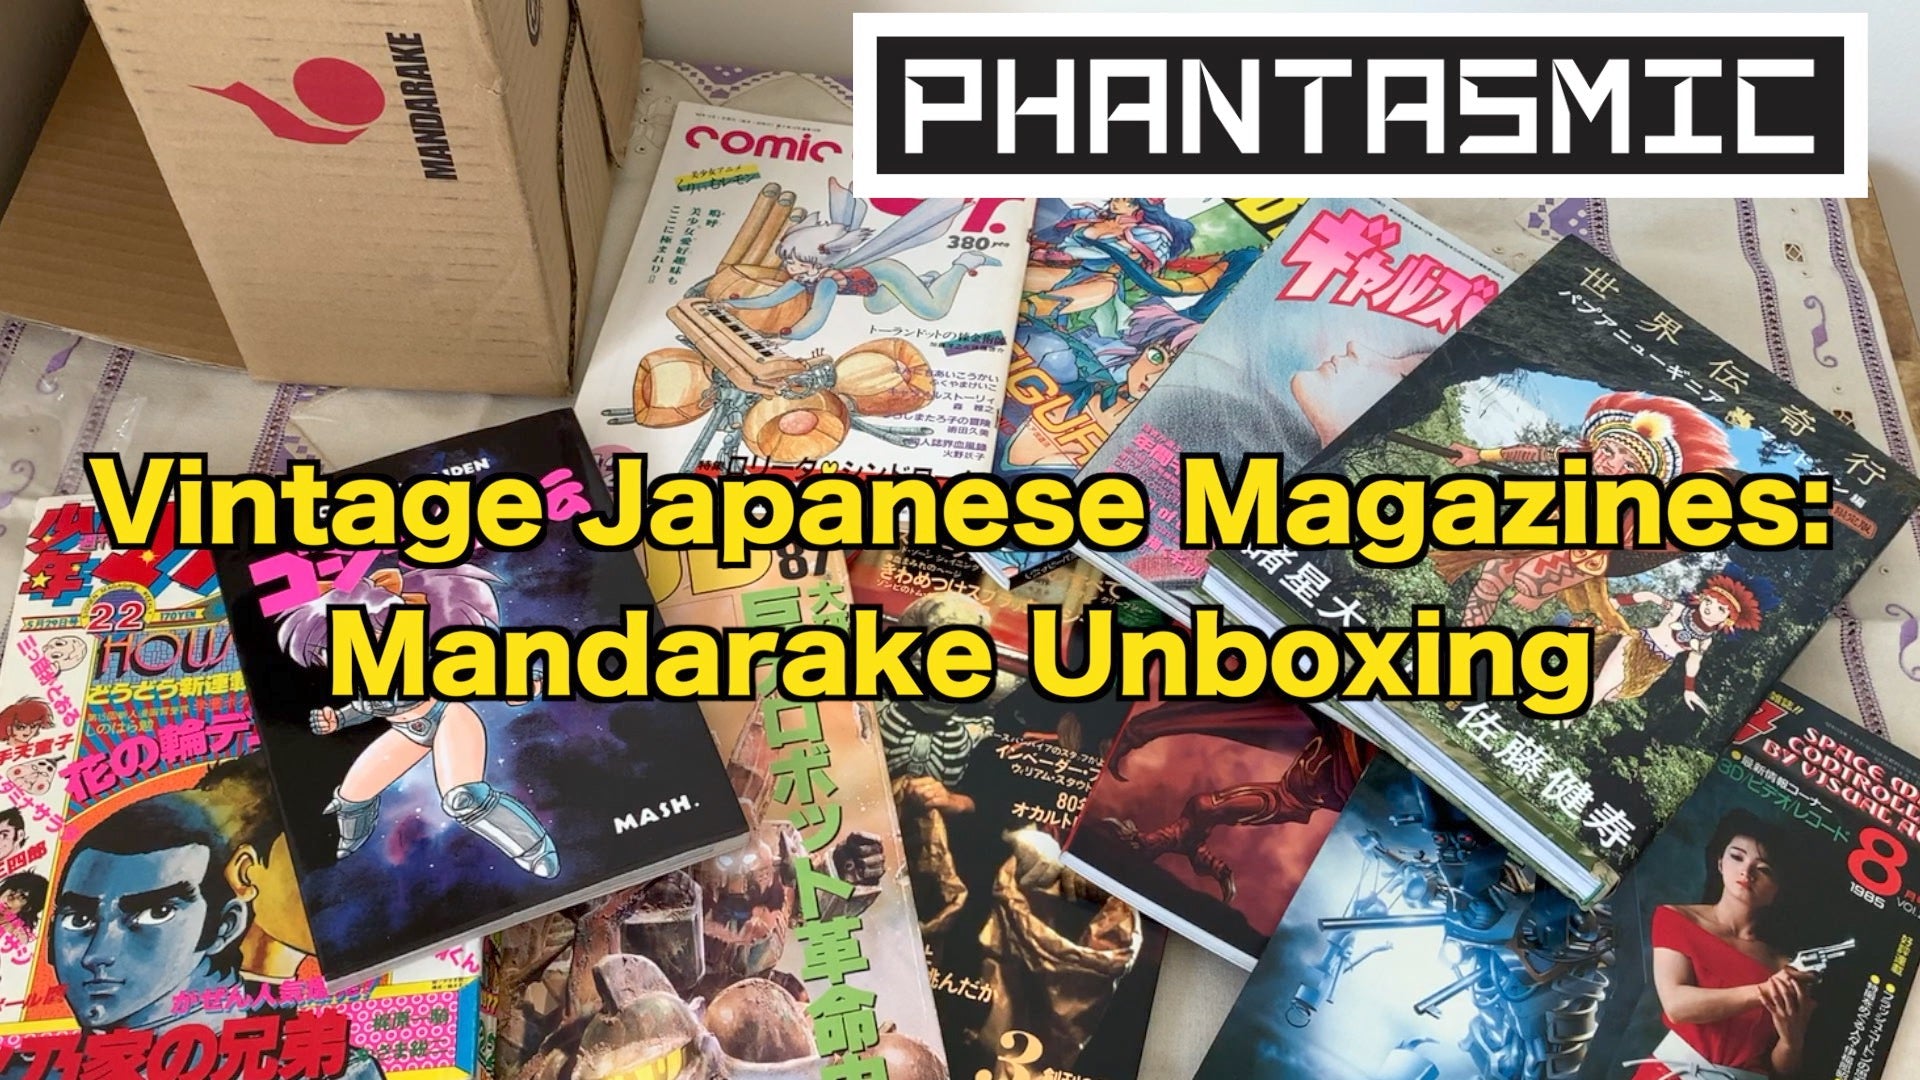 Phantasmic Unboxing: Vintage Japanese Magazines